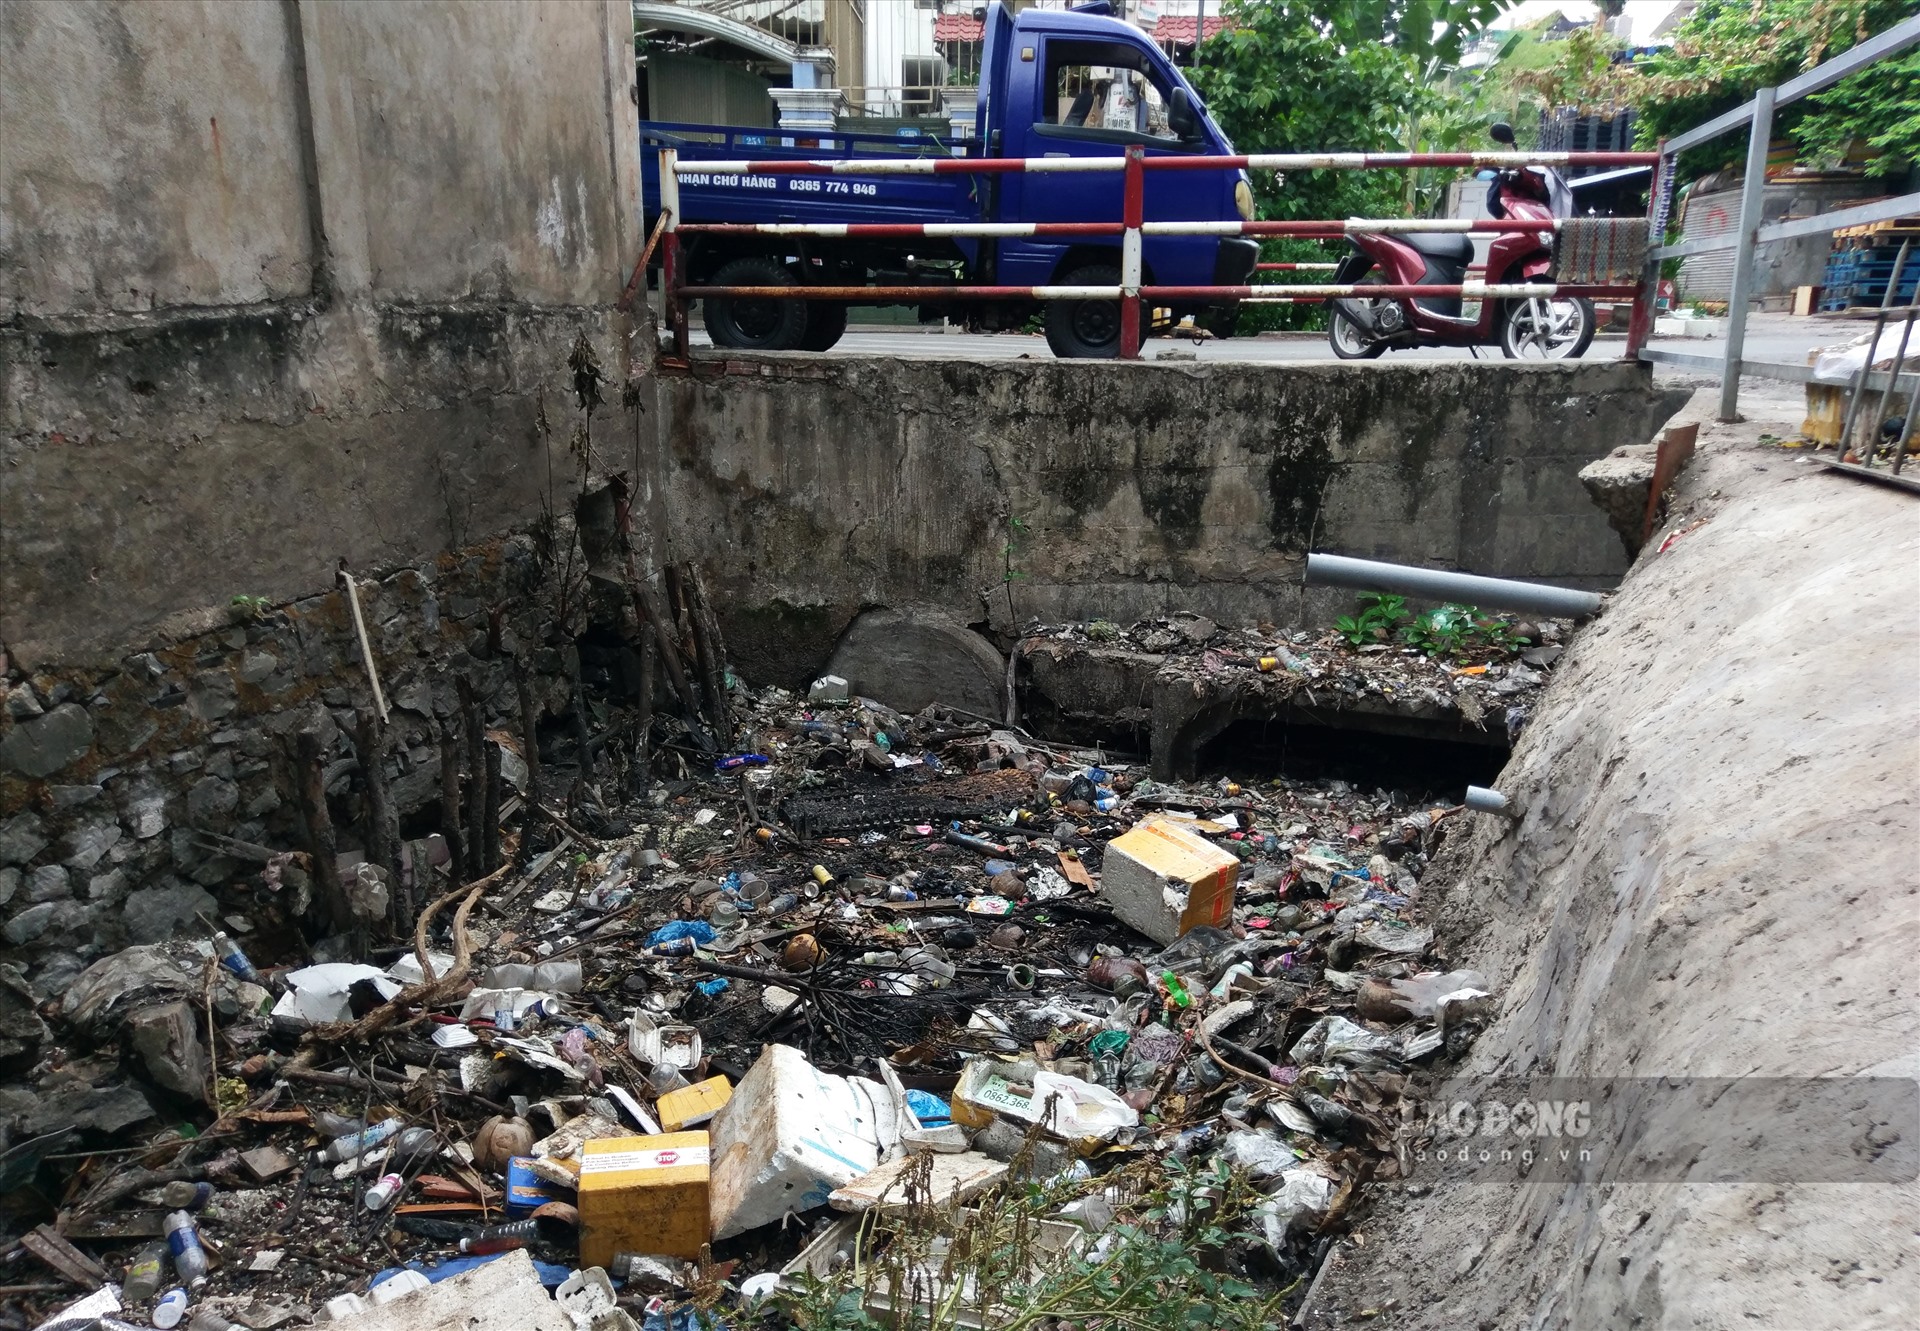 Kênh A41 đoạn từ đường Phan Thúc Duyện đến đường Cộng Hòa, phường 4, quận Tân Bình, rác thải trải đầy trên kênh khiến dòng nước bị ô nhiễm, bốc mùi hôi thối khó chịu, một số ống thoát nước bị tắc nghẽn.  Ảnh: Minh Quân